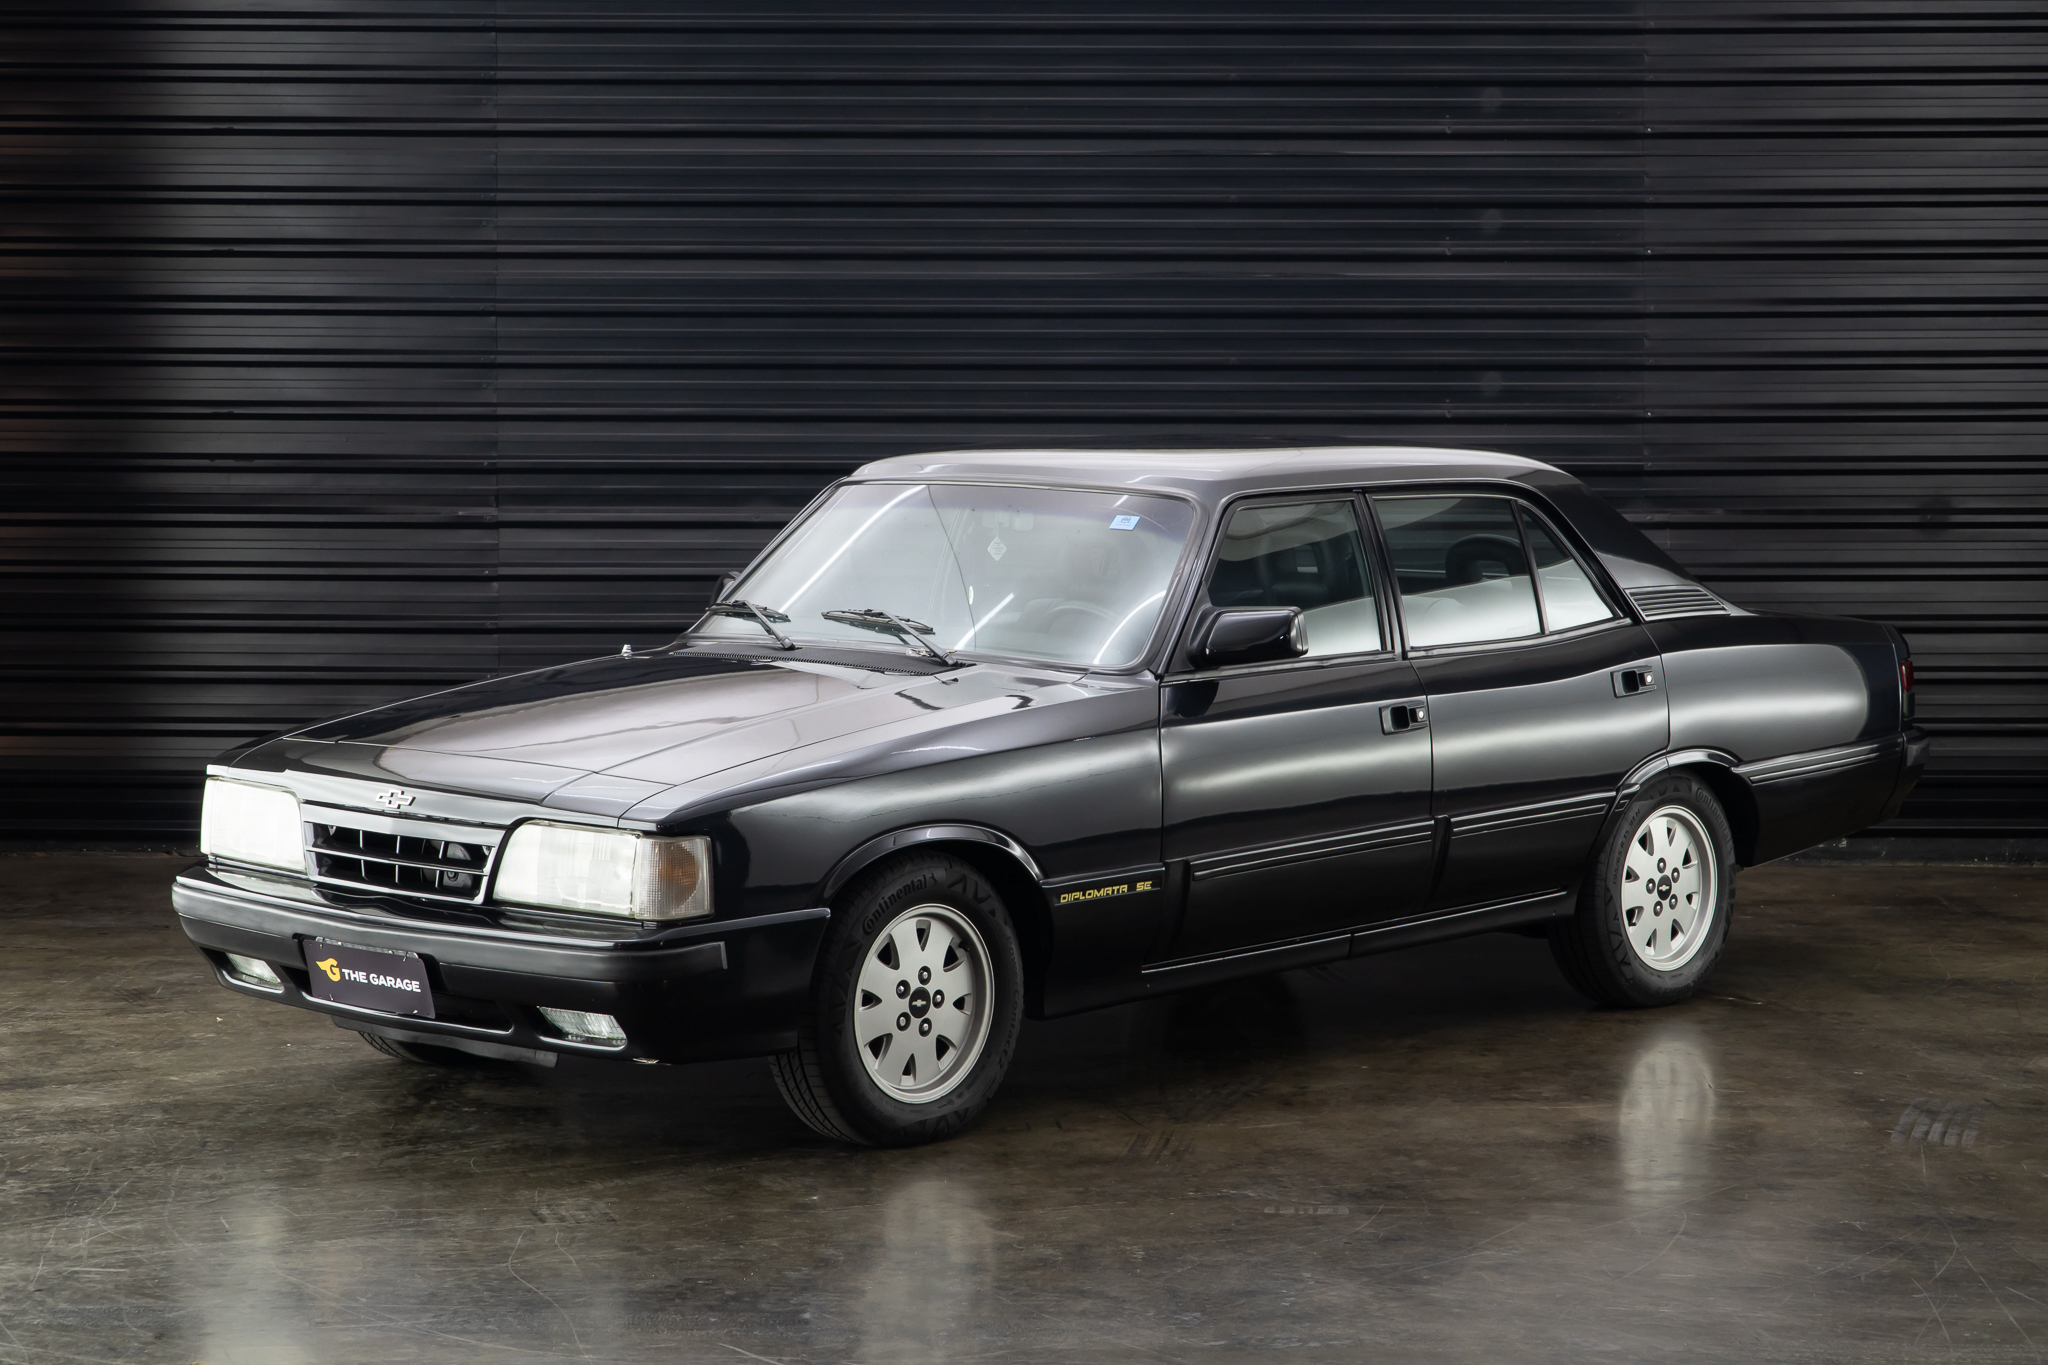 1992 GM Opala Diplomata SE automátic 4.1 a venda the garage